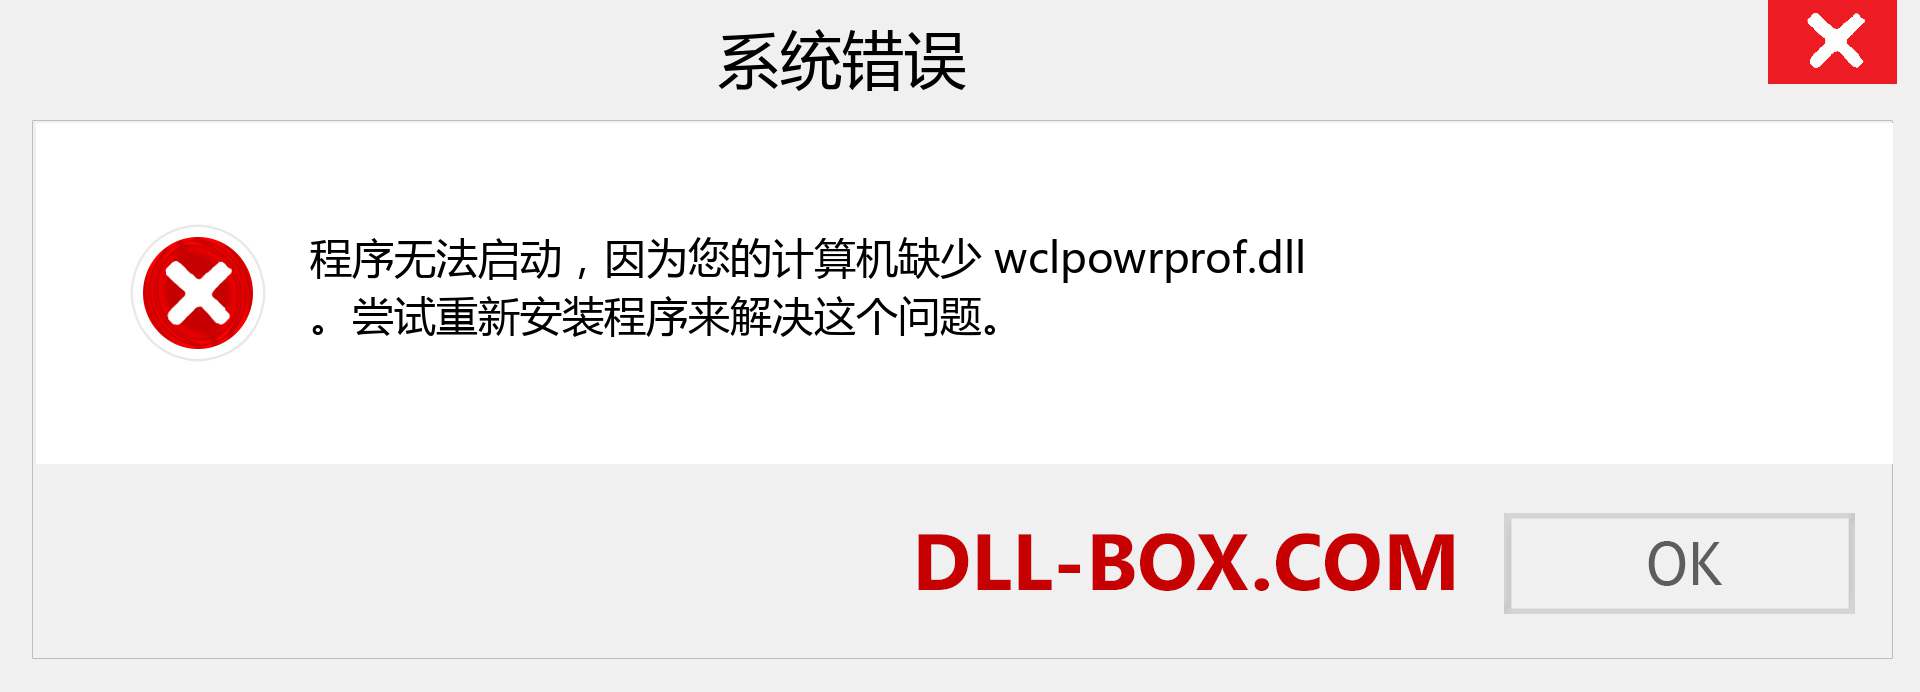 wclpowrprof.dll 文件丢失？。 适用于 Windows 7、8、10 的下载 - 修复 Windows、照片、图像上的 wclpowrprof dll 丢失错误